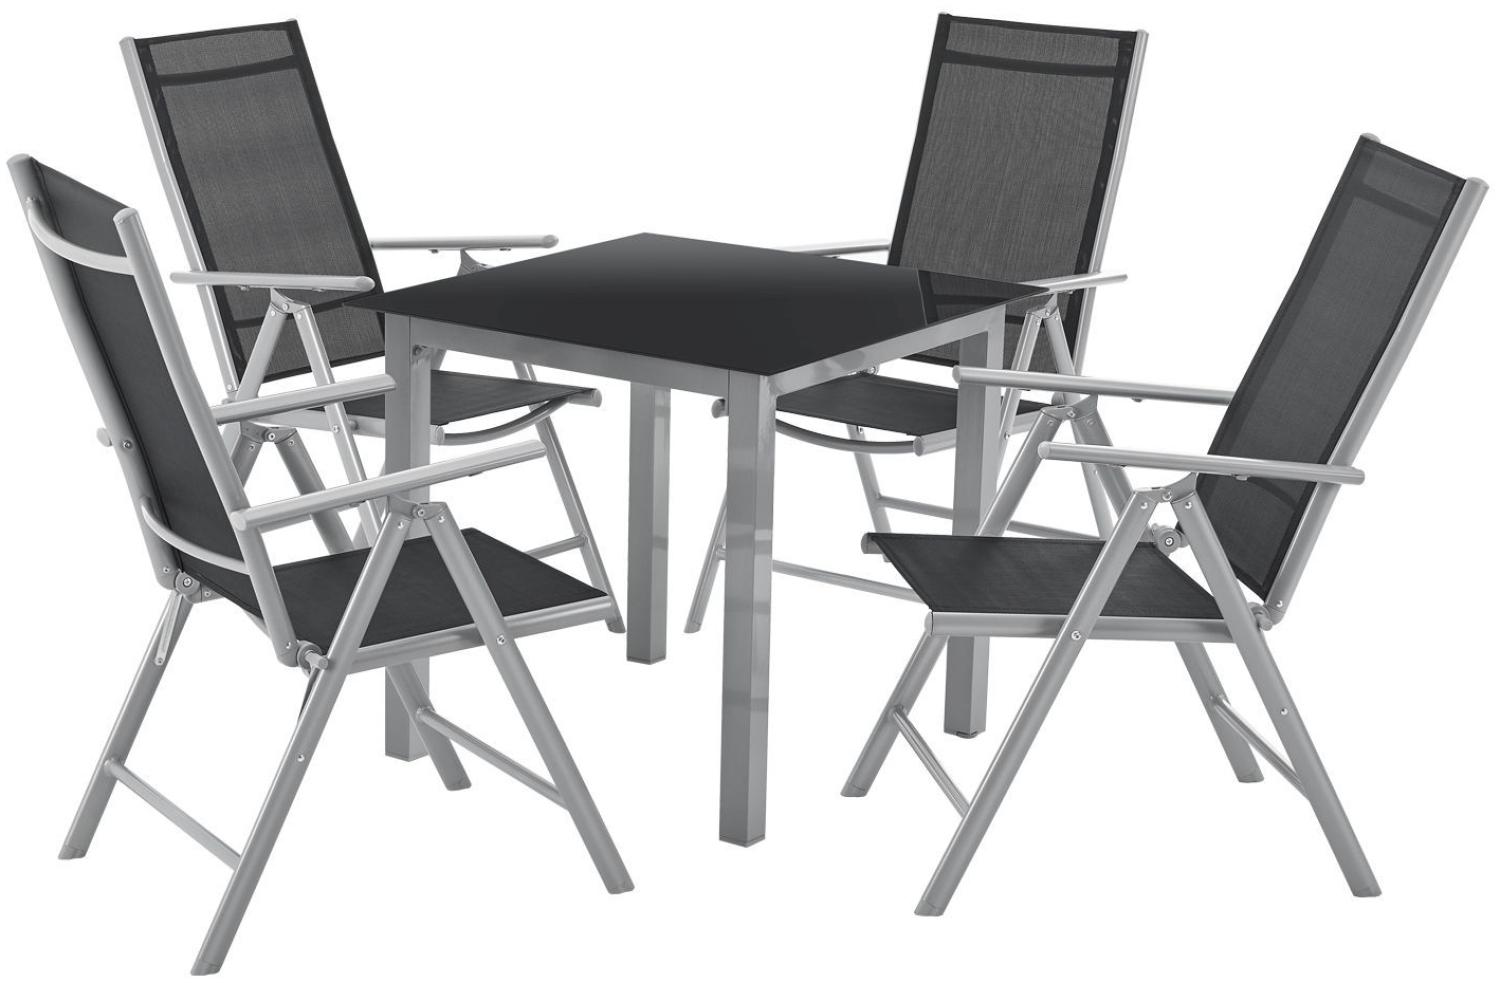 Juskys Aluminium Gartengarnitur Milano 4+1 — 4 Hochlehner Stühle verstellbar & klappbar mit Tisch — Gartenmöbel Set 5-teilig wetterfest — Silber Bild 1